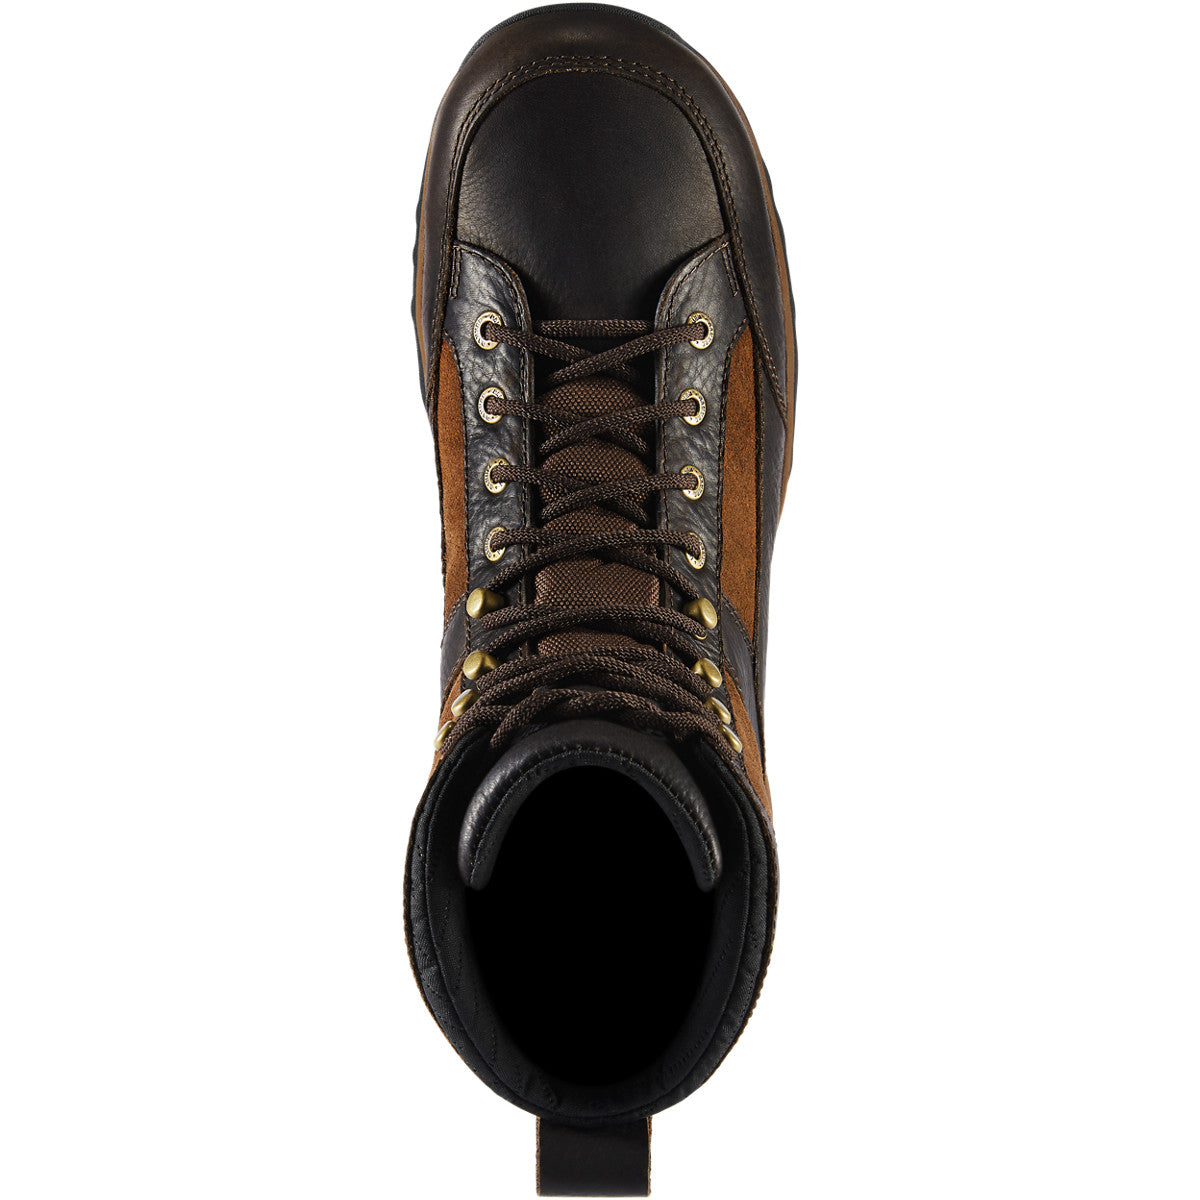 Danner Men's Recurve 7" Waterproof Hunt Boot - Brown - 47611  - Overlook Boots